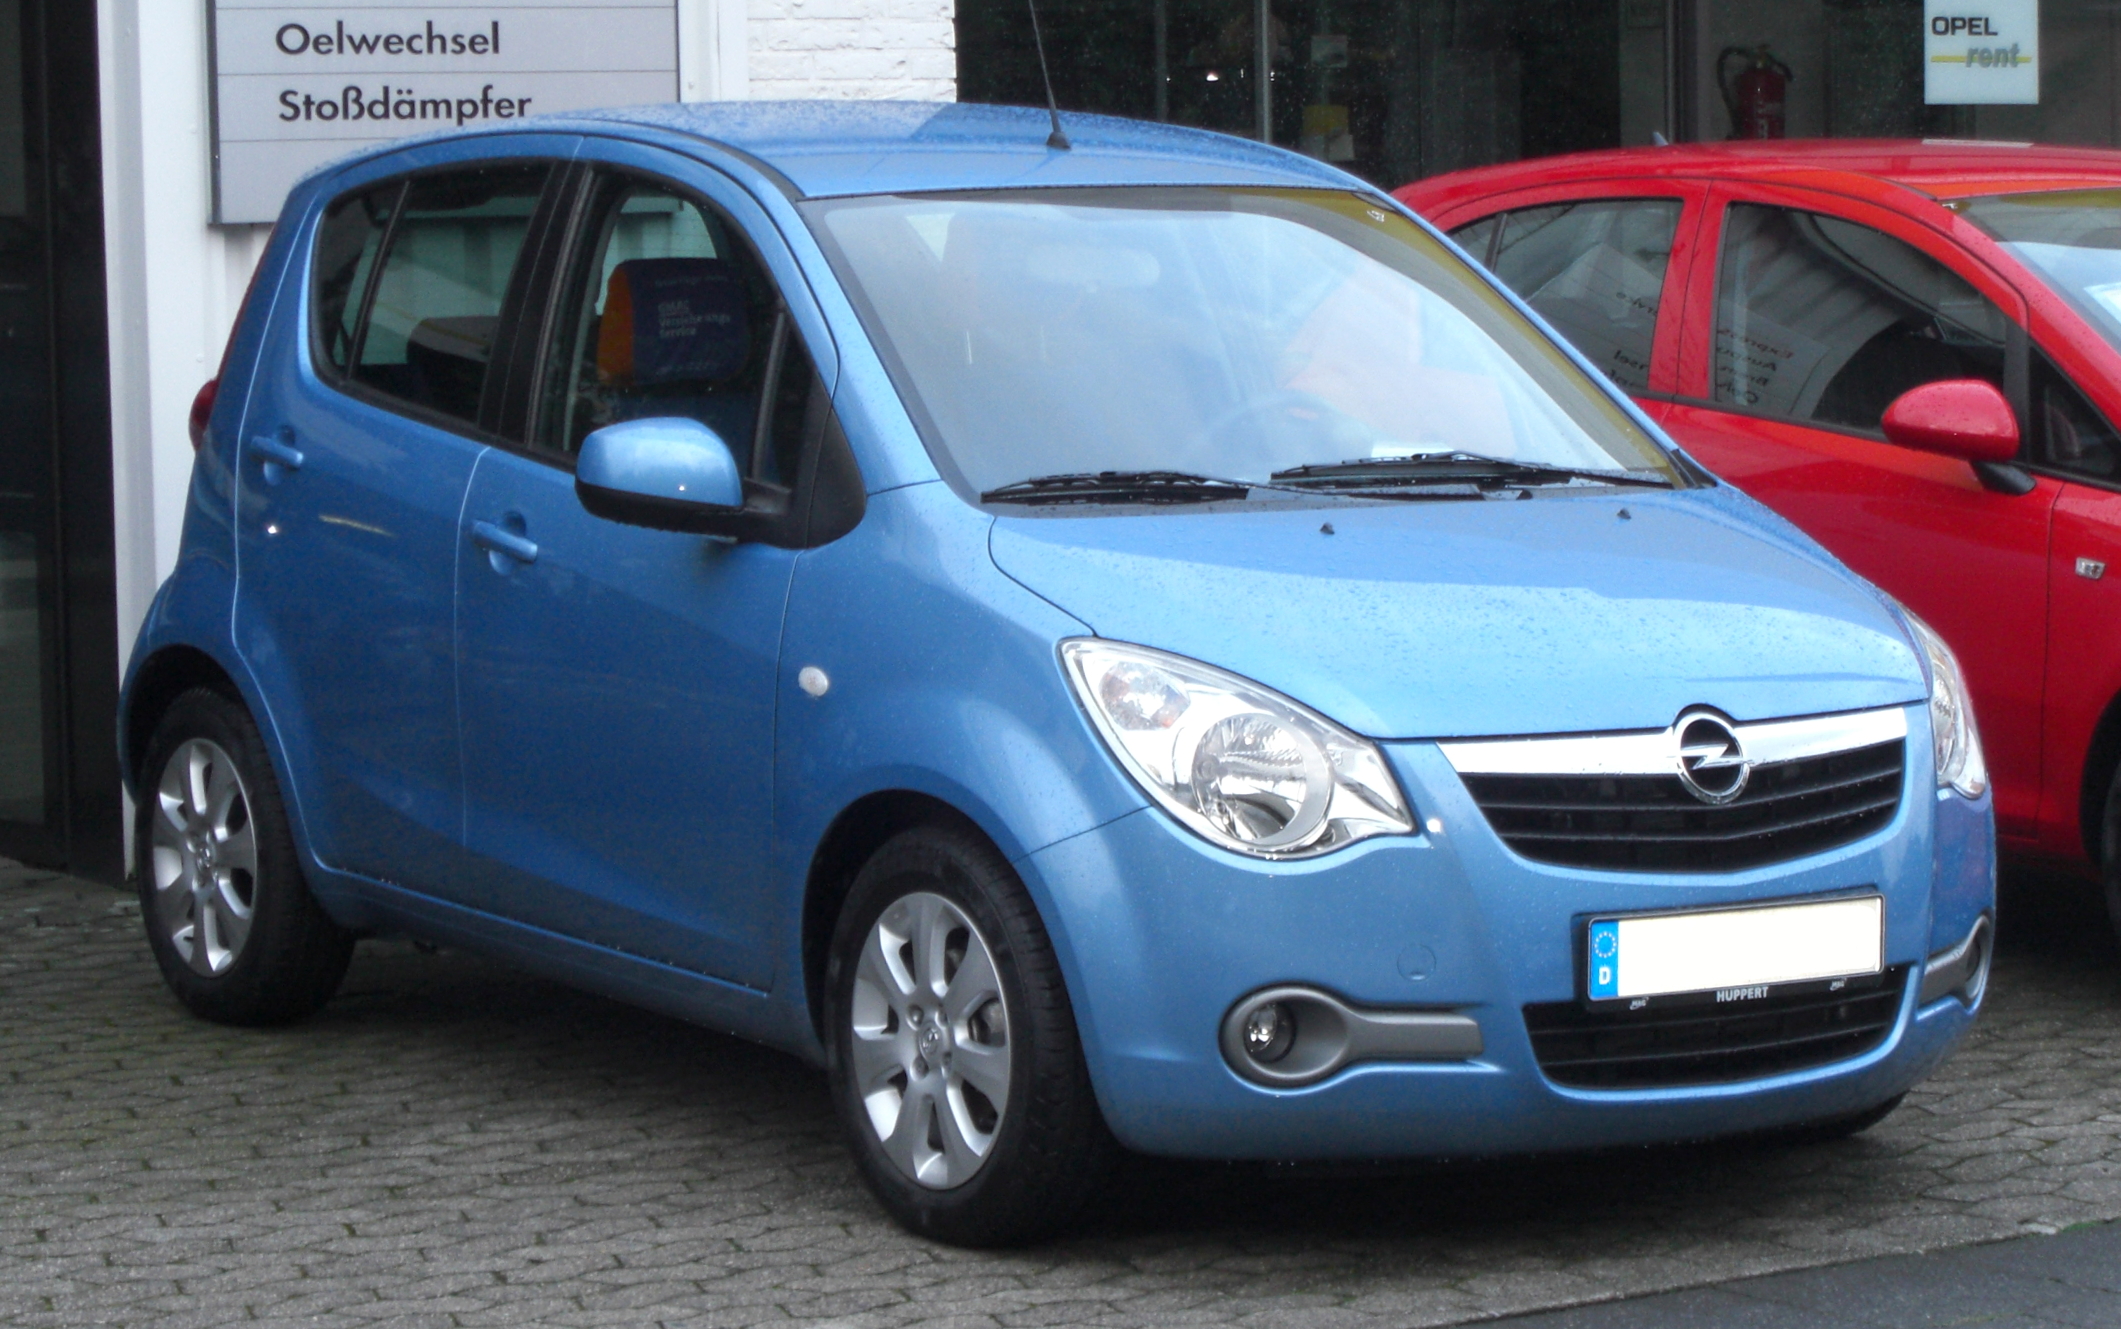 File:Opel Agila B front-3.jpg - Wikimedia Commons